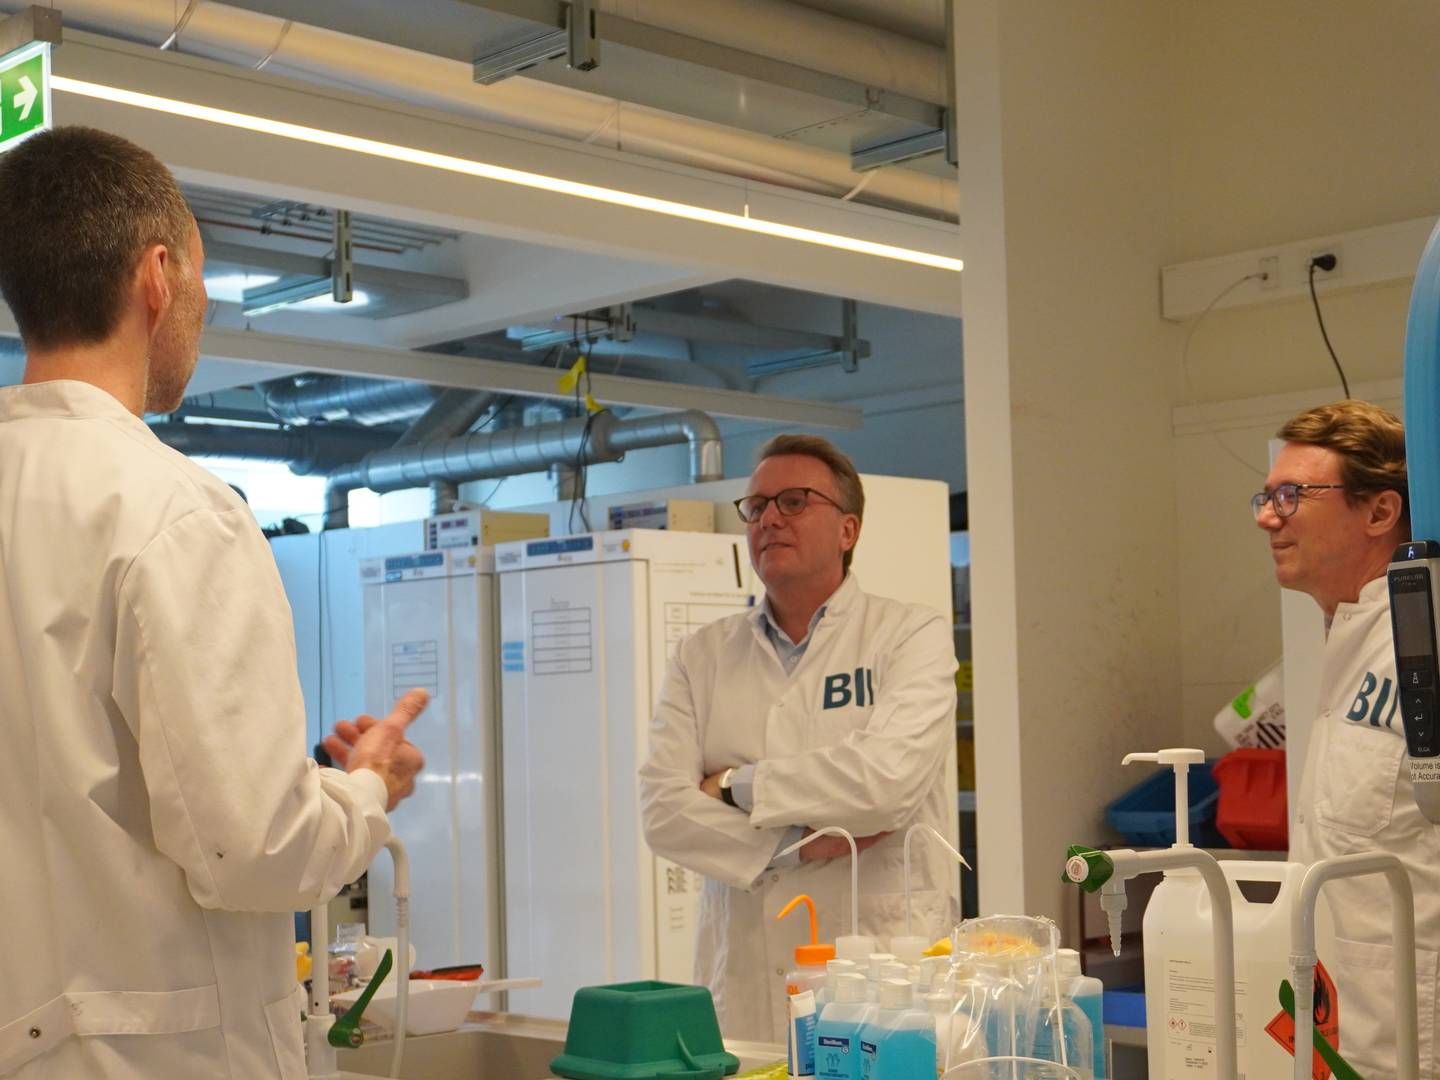 Erhvervsminister Morten Bødskov (S) under mandagens besøg hos Bioinnovation Institute (BII). | Foto: Bioinnovation Institute / Sigrid Hyldig / PR